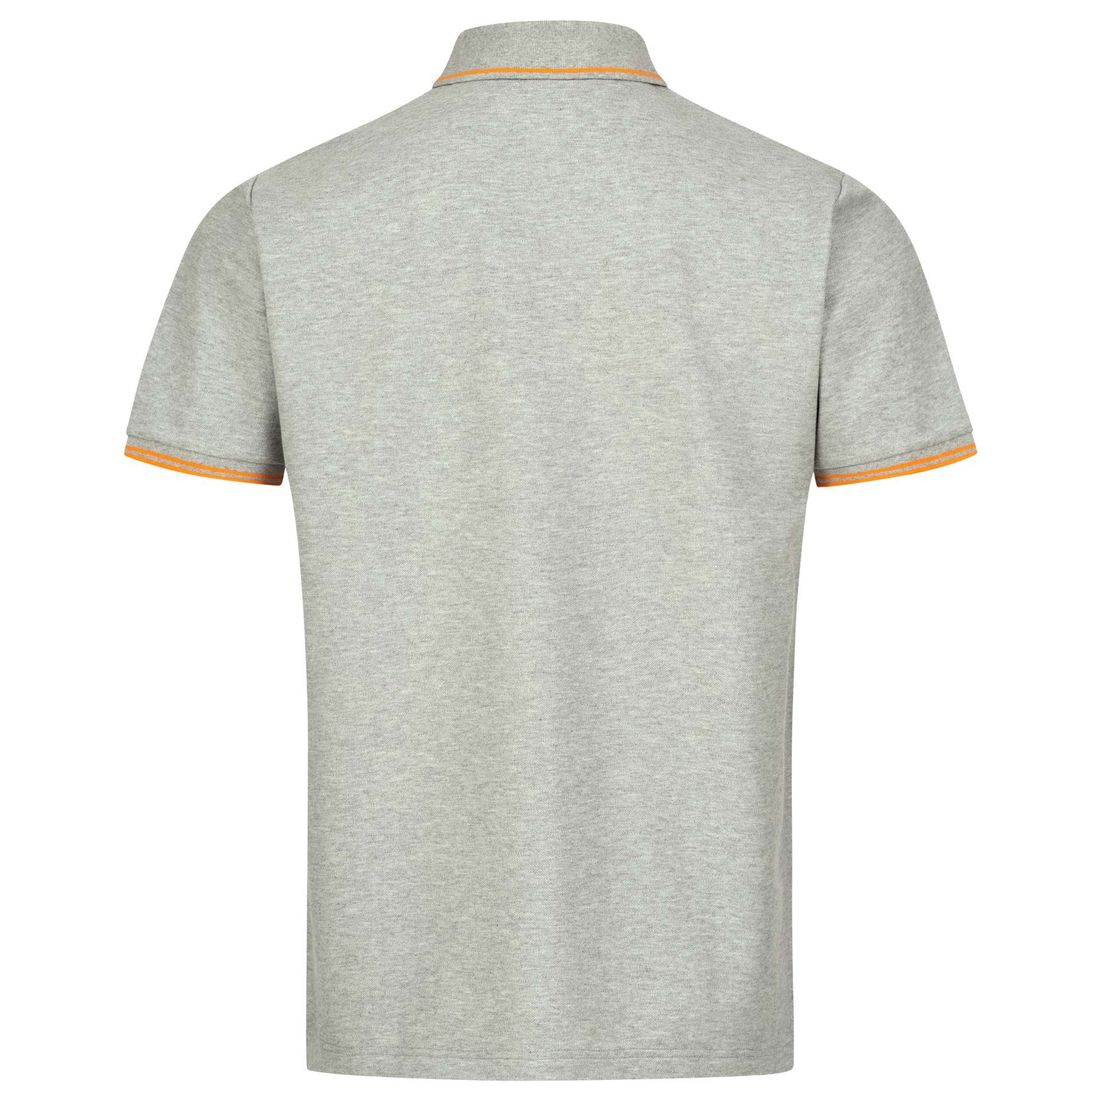 BLASER Herren Polo Shirt 22 grau melange Rückenbereich